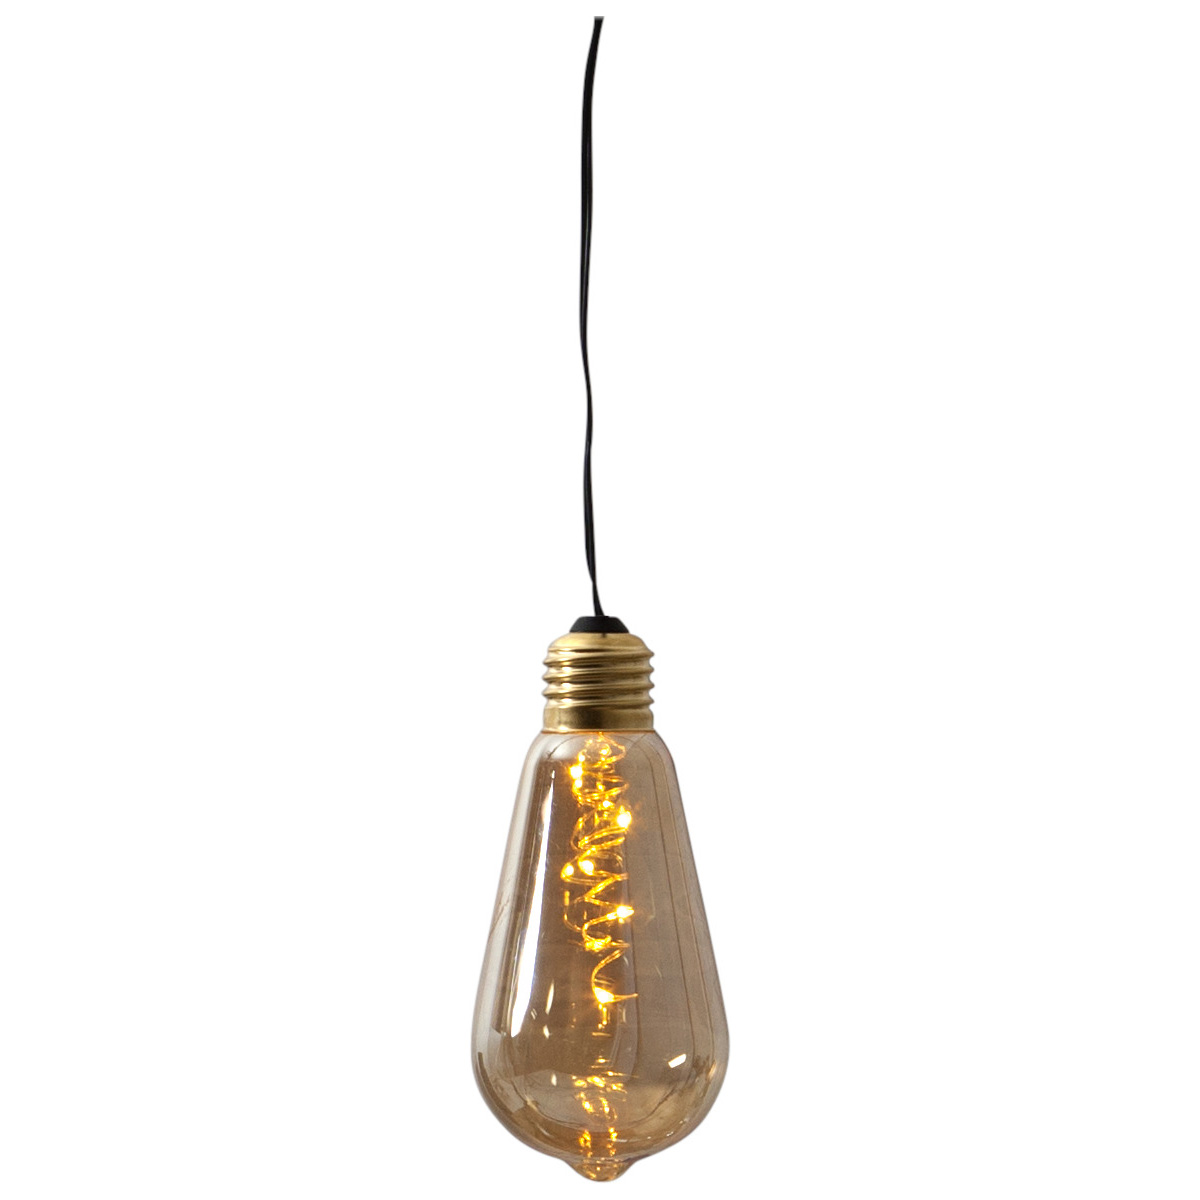 LED Dekoleuchte Glow - 5 warmweiße LED in amber Glühbirne - H: 13cm - D: 6cm - Batterie - Timer